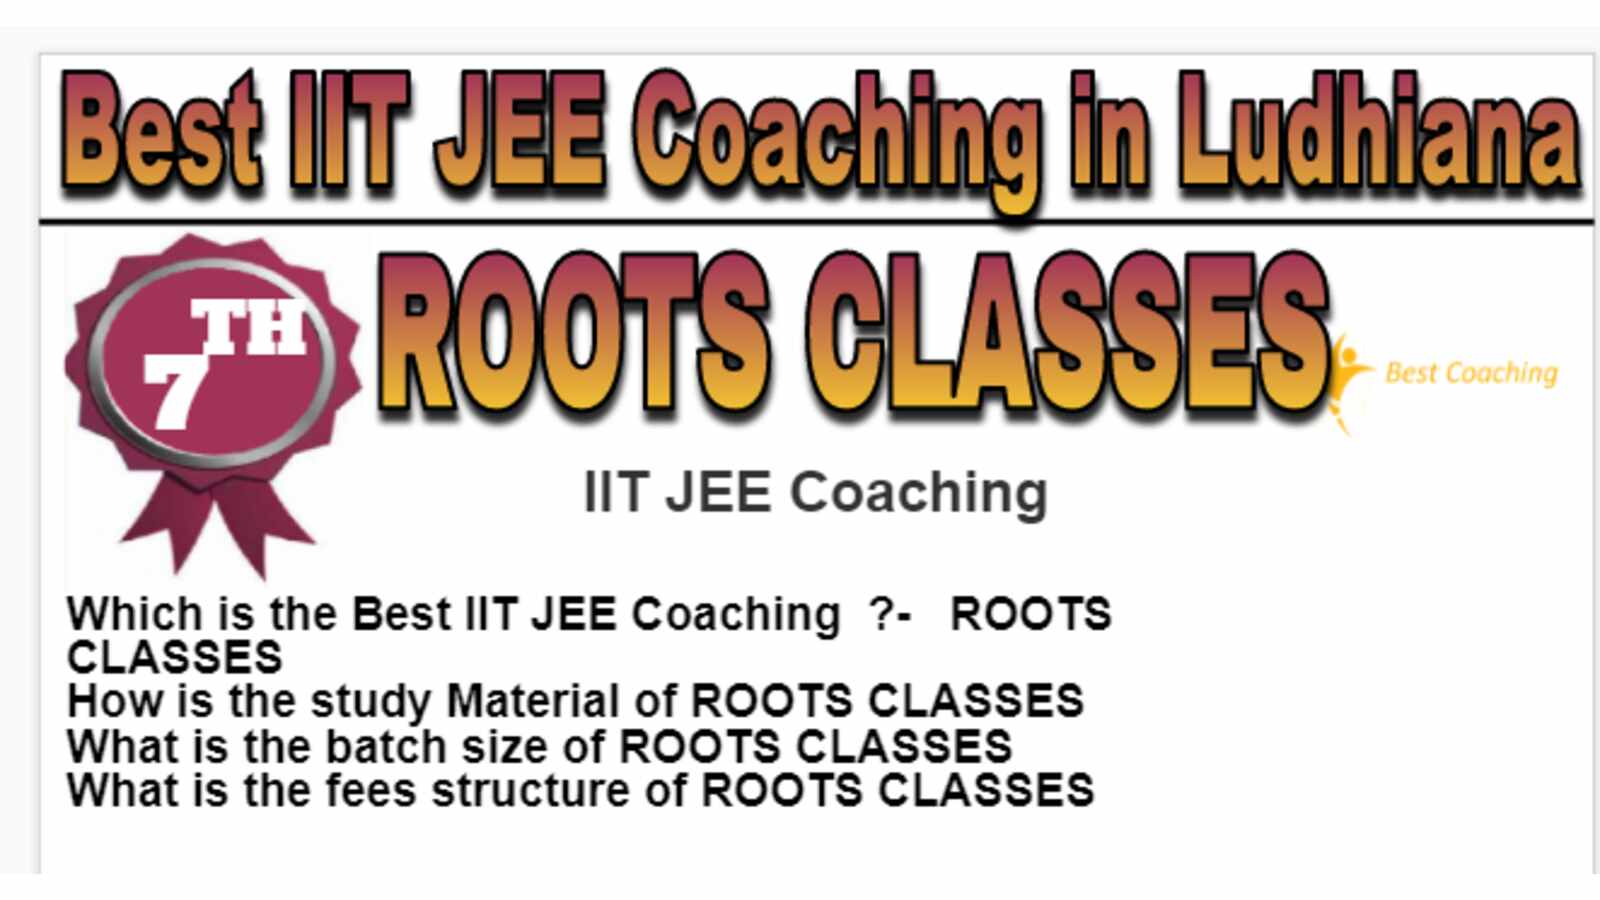 Rank 7 Best IIT JEE Coaching in Ludhiana